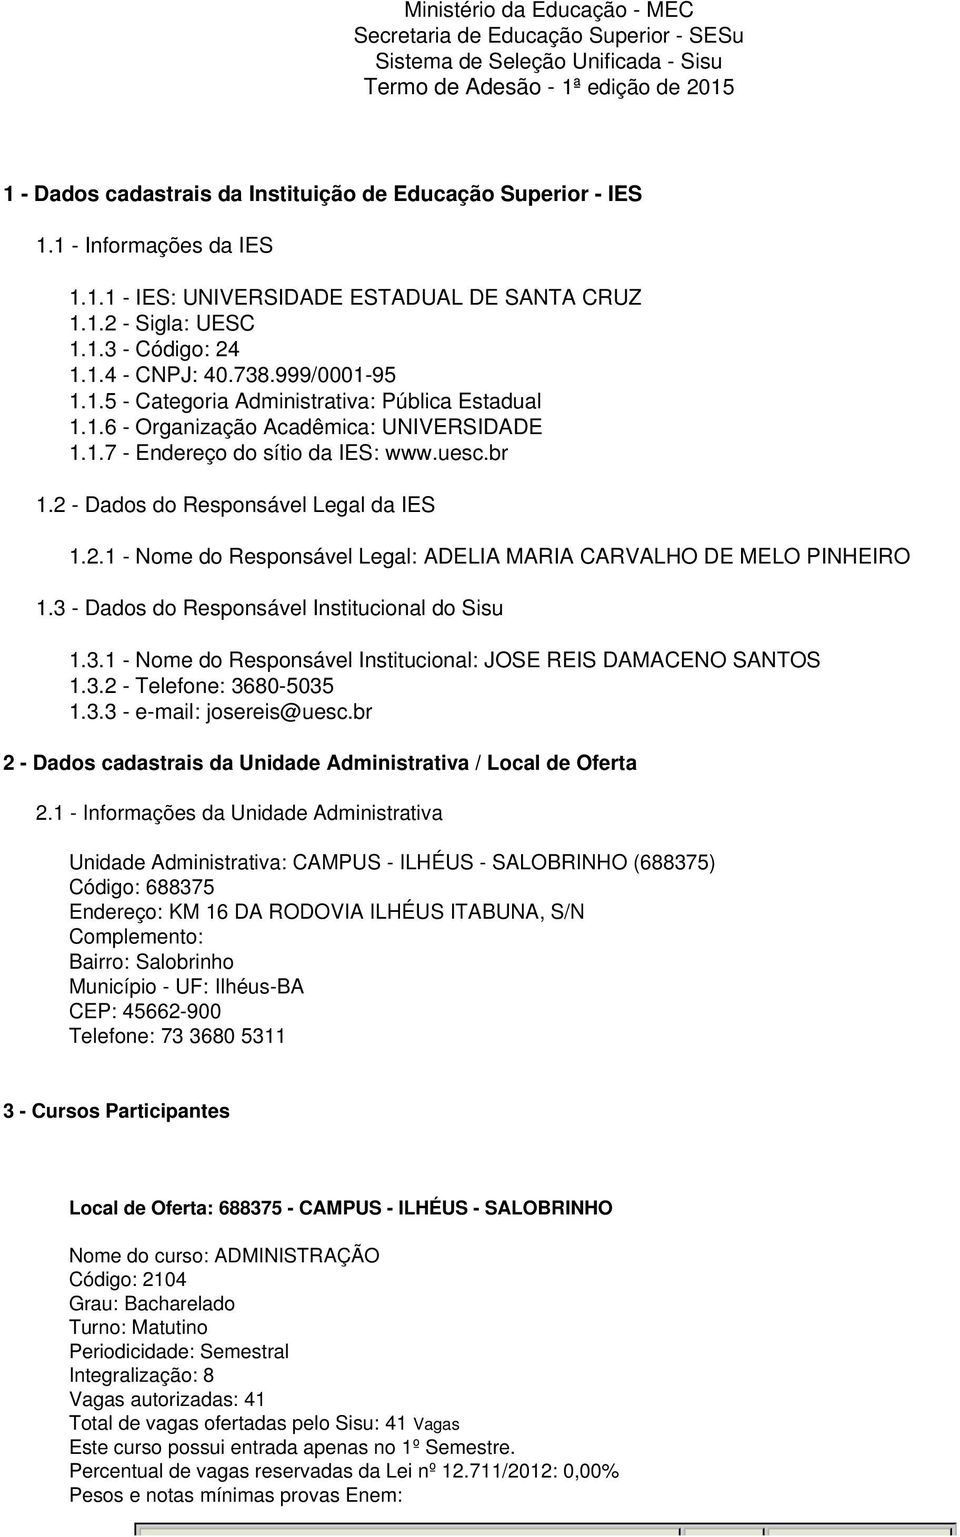 1.6 - Organização Acadêmica: UNIVERSIDADE 1.1.7 - Endereço do sítio da IES: www.uesc.br 1.2 - Dados do Responsável Legal da IES 1.2.1 - Nome do Responsável Legal: ADELIA MARIA CARVALHO DE MELO PINHEIRO 1.